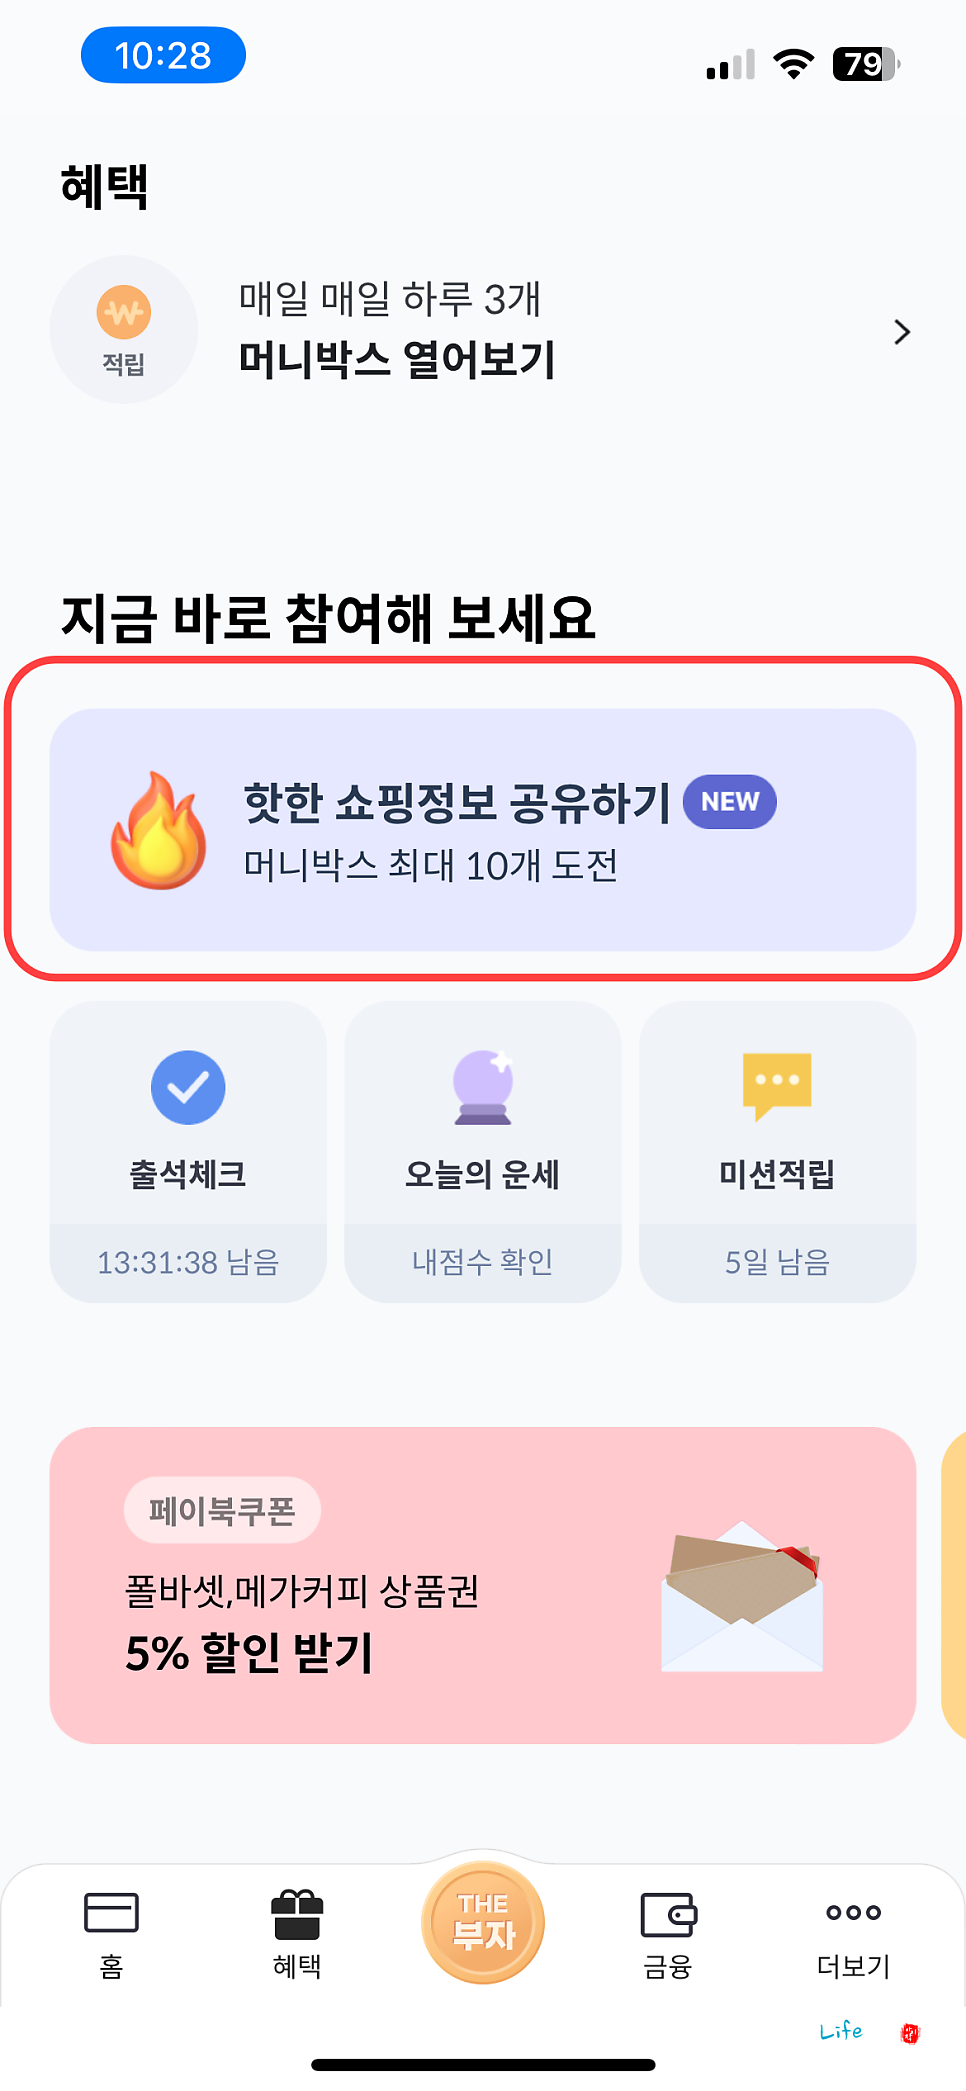 쇼핑 커뮤니티 페이북 핫딜북 소개 및 활용 방법